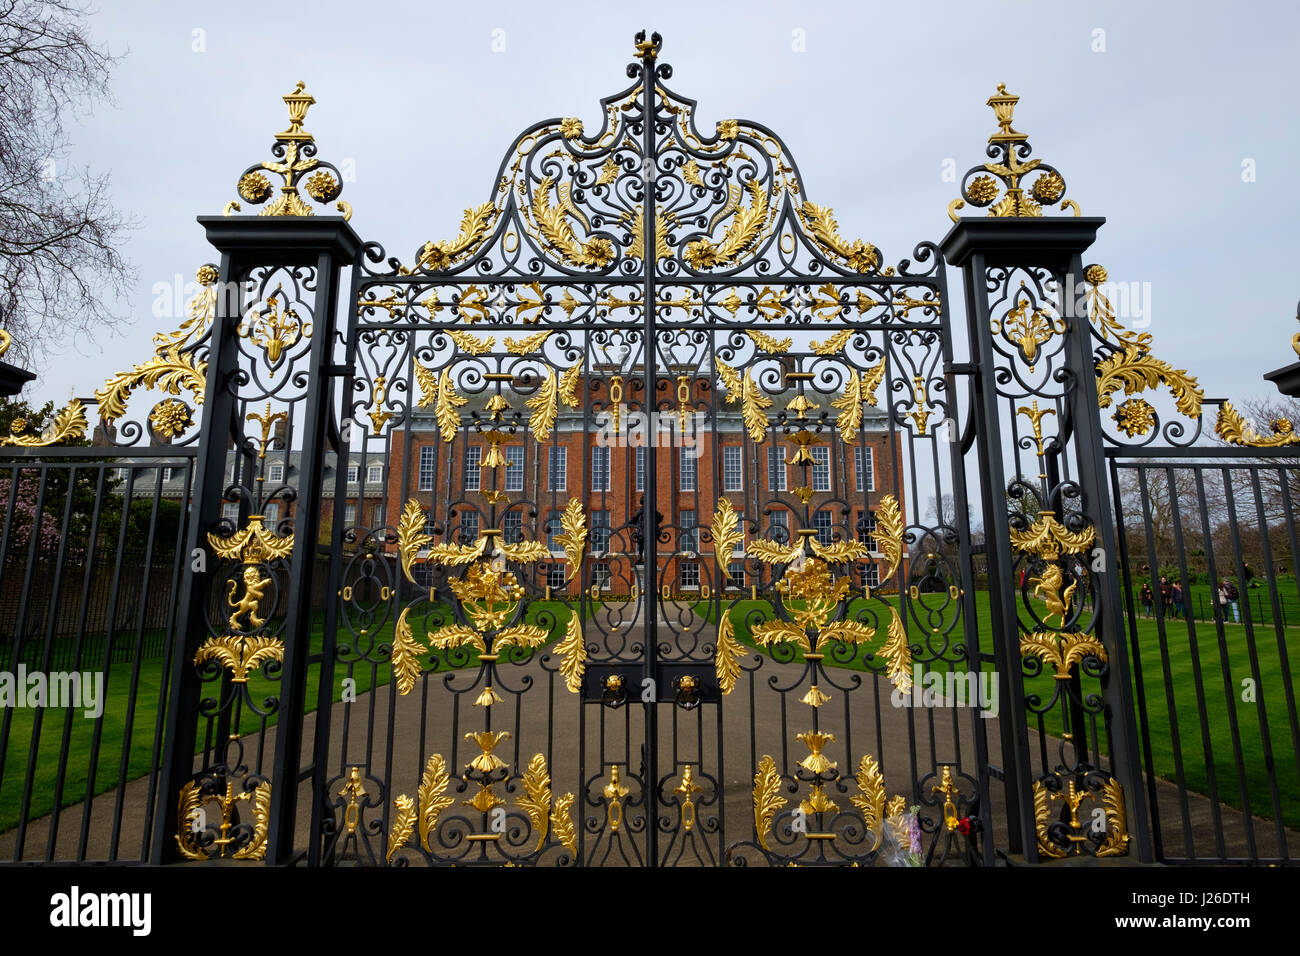 Forged iron gates of Kensington Palace, London, England, UK, Europe Stock Photo